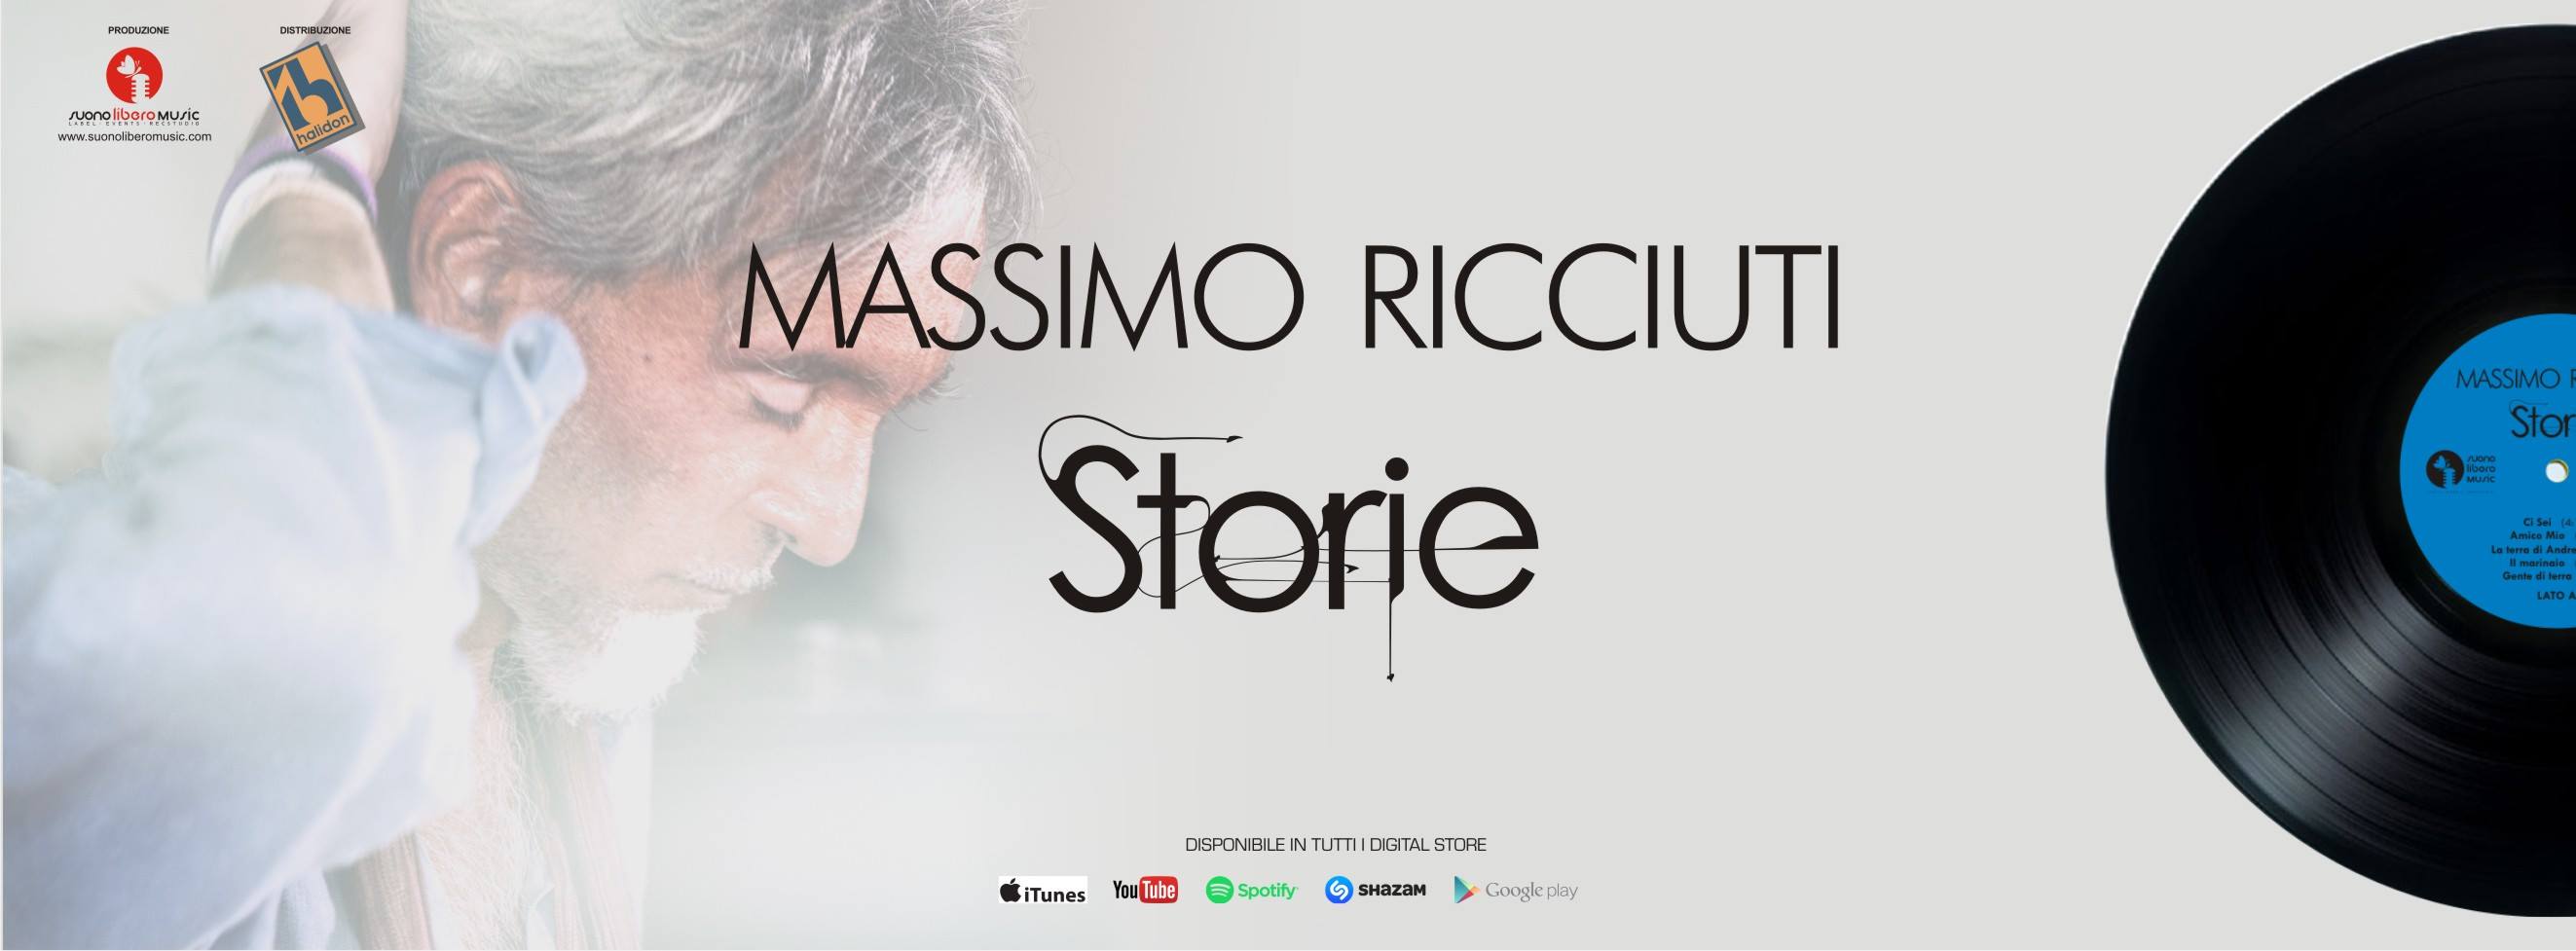 Storie, l’album di Massimo Ricciuti lanciato dal singolo "Ci sei"